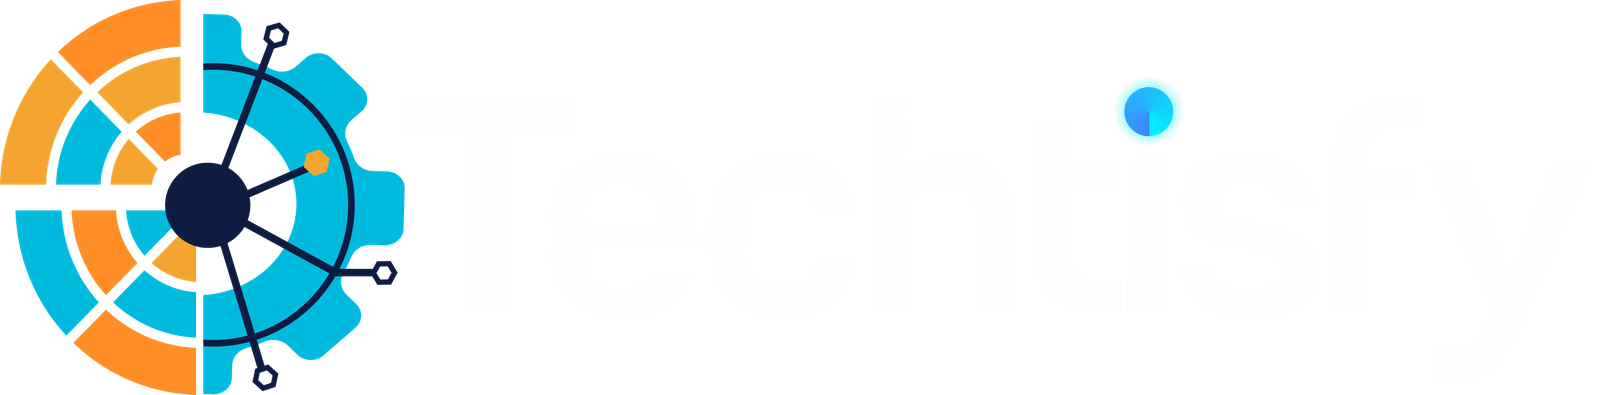 techtisfy